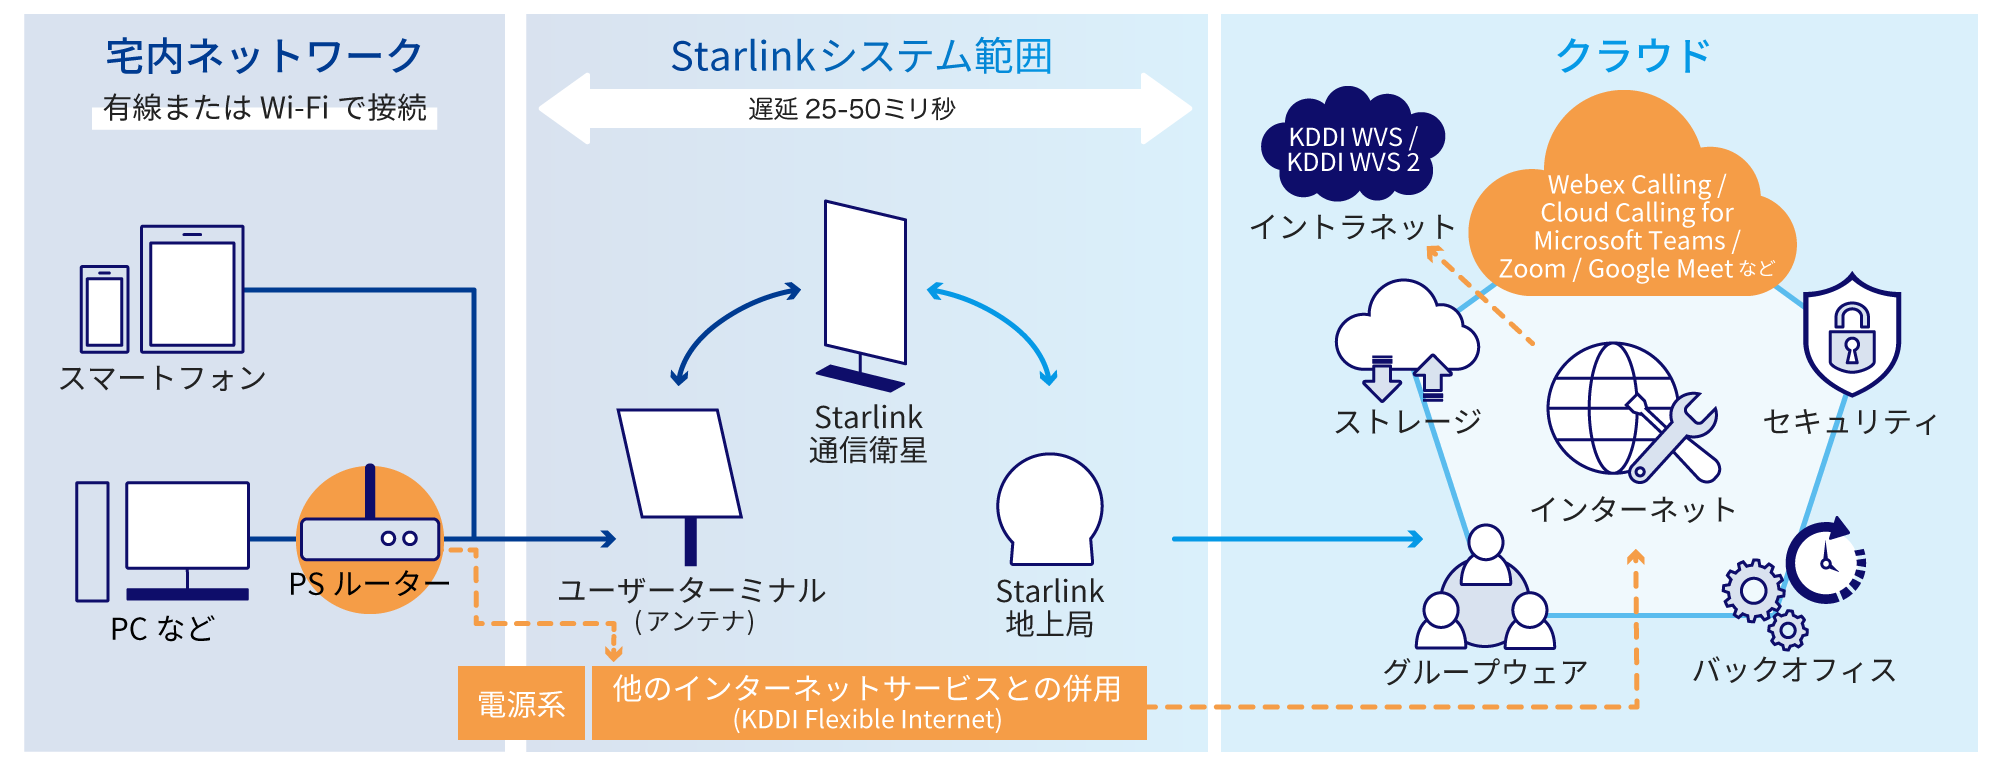 宅内ネットワーク、有線またはWi-Fiで接続（電話やスマートフォンなど）→Strarlinkシステム範囲（ユーザーターミナル (アンテナ)↔Starlink通信衛星↔Starlink地上局）→クラウド